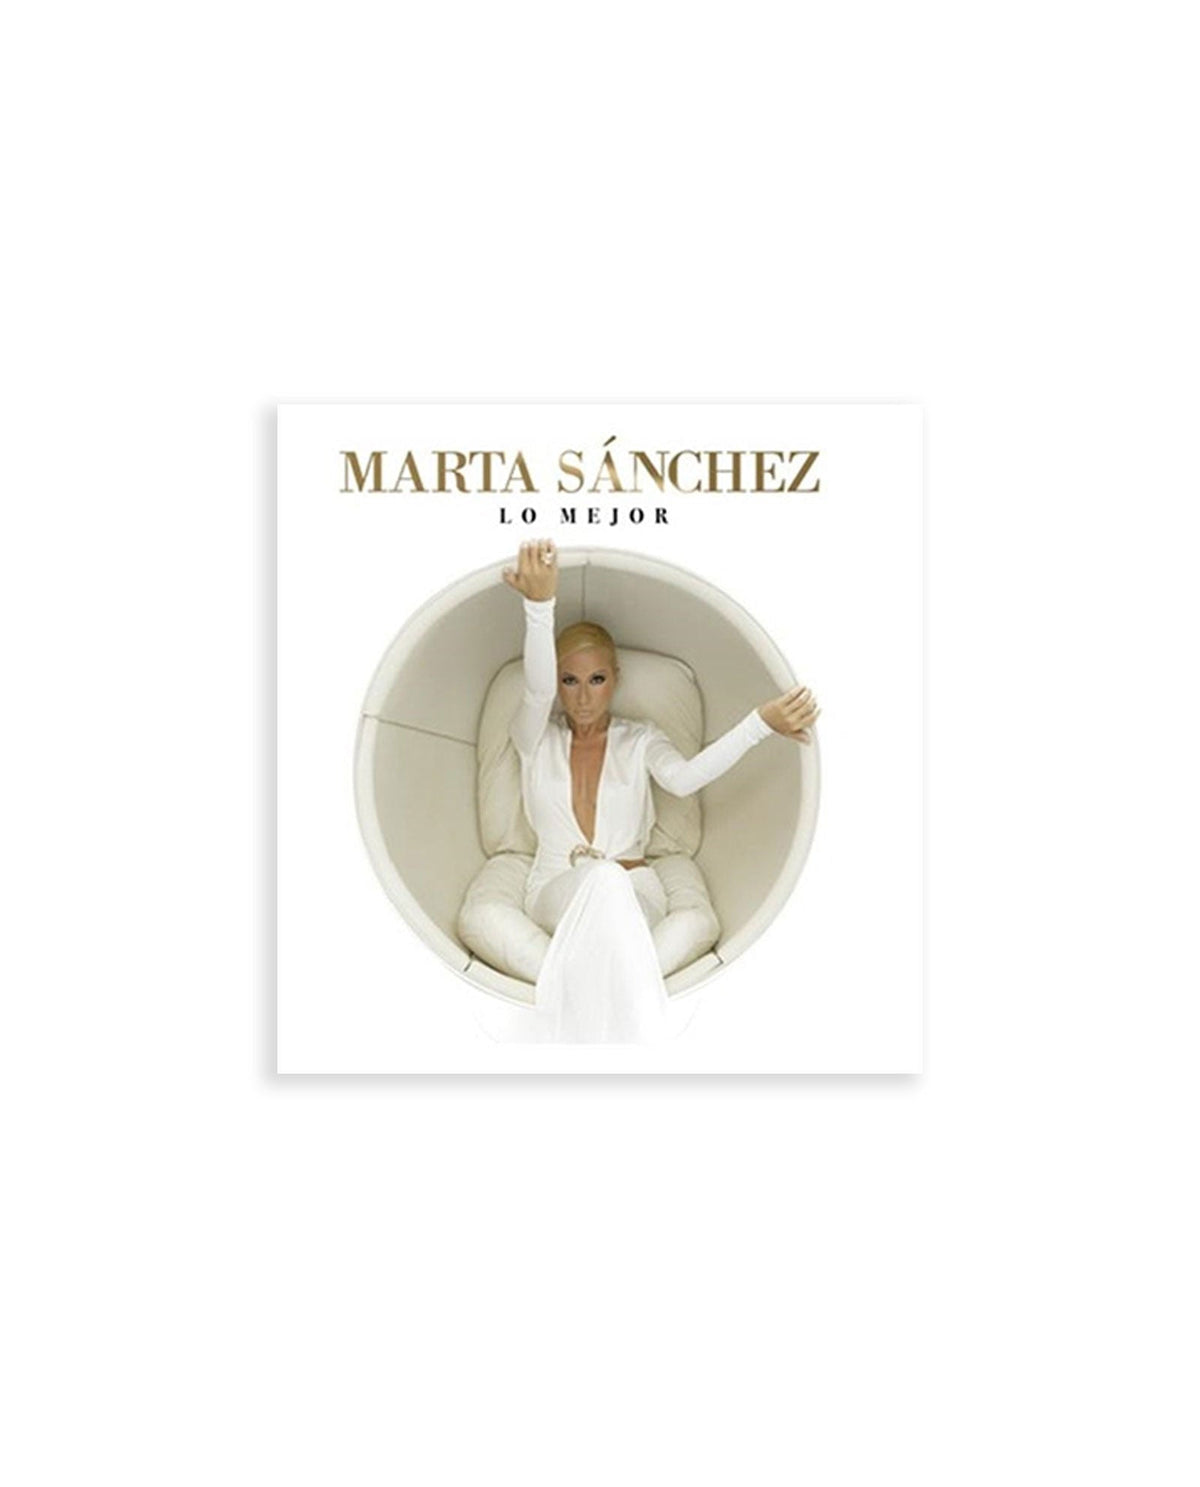 LP “Lo mejor” – Marta Sánchez - Rocktud - Marta Sanchez